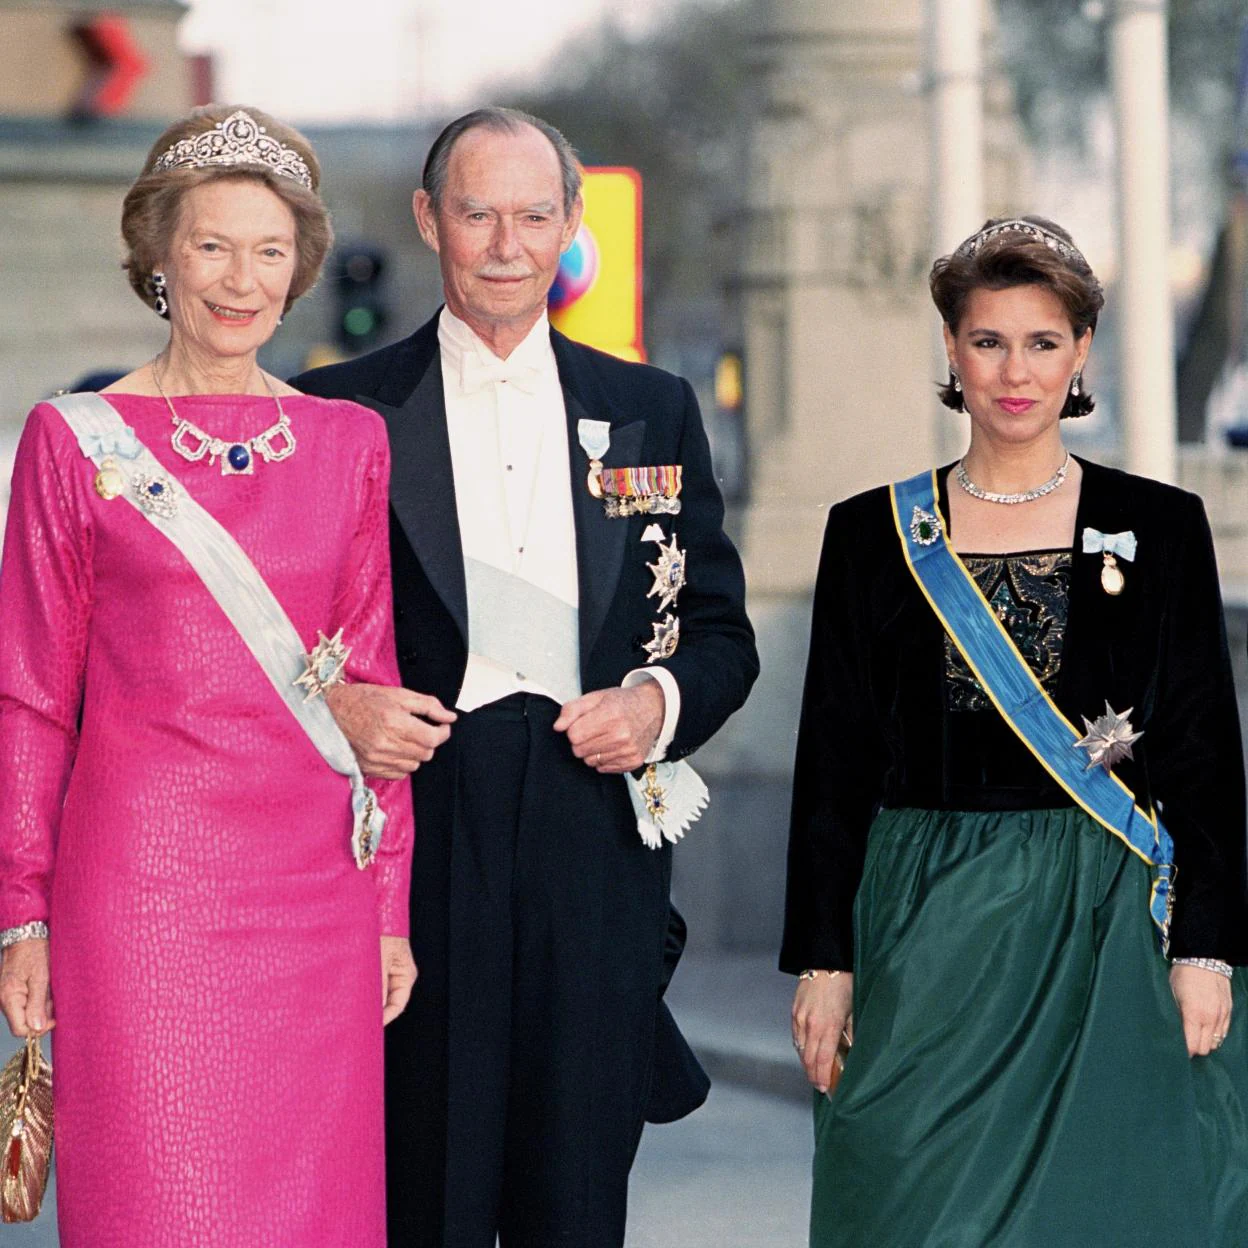 De izquierda a derecha, la suegra, la Gran Duquesa Josefina-Carlota, su esposo, el Gran Duque Juan de Luxemburgo, y su nuera, la cubana (y actual Gran Duquesa) María Teresa Mestre./getty images